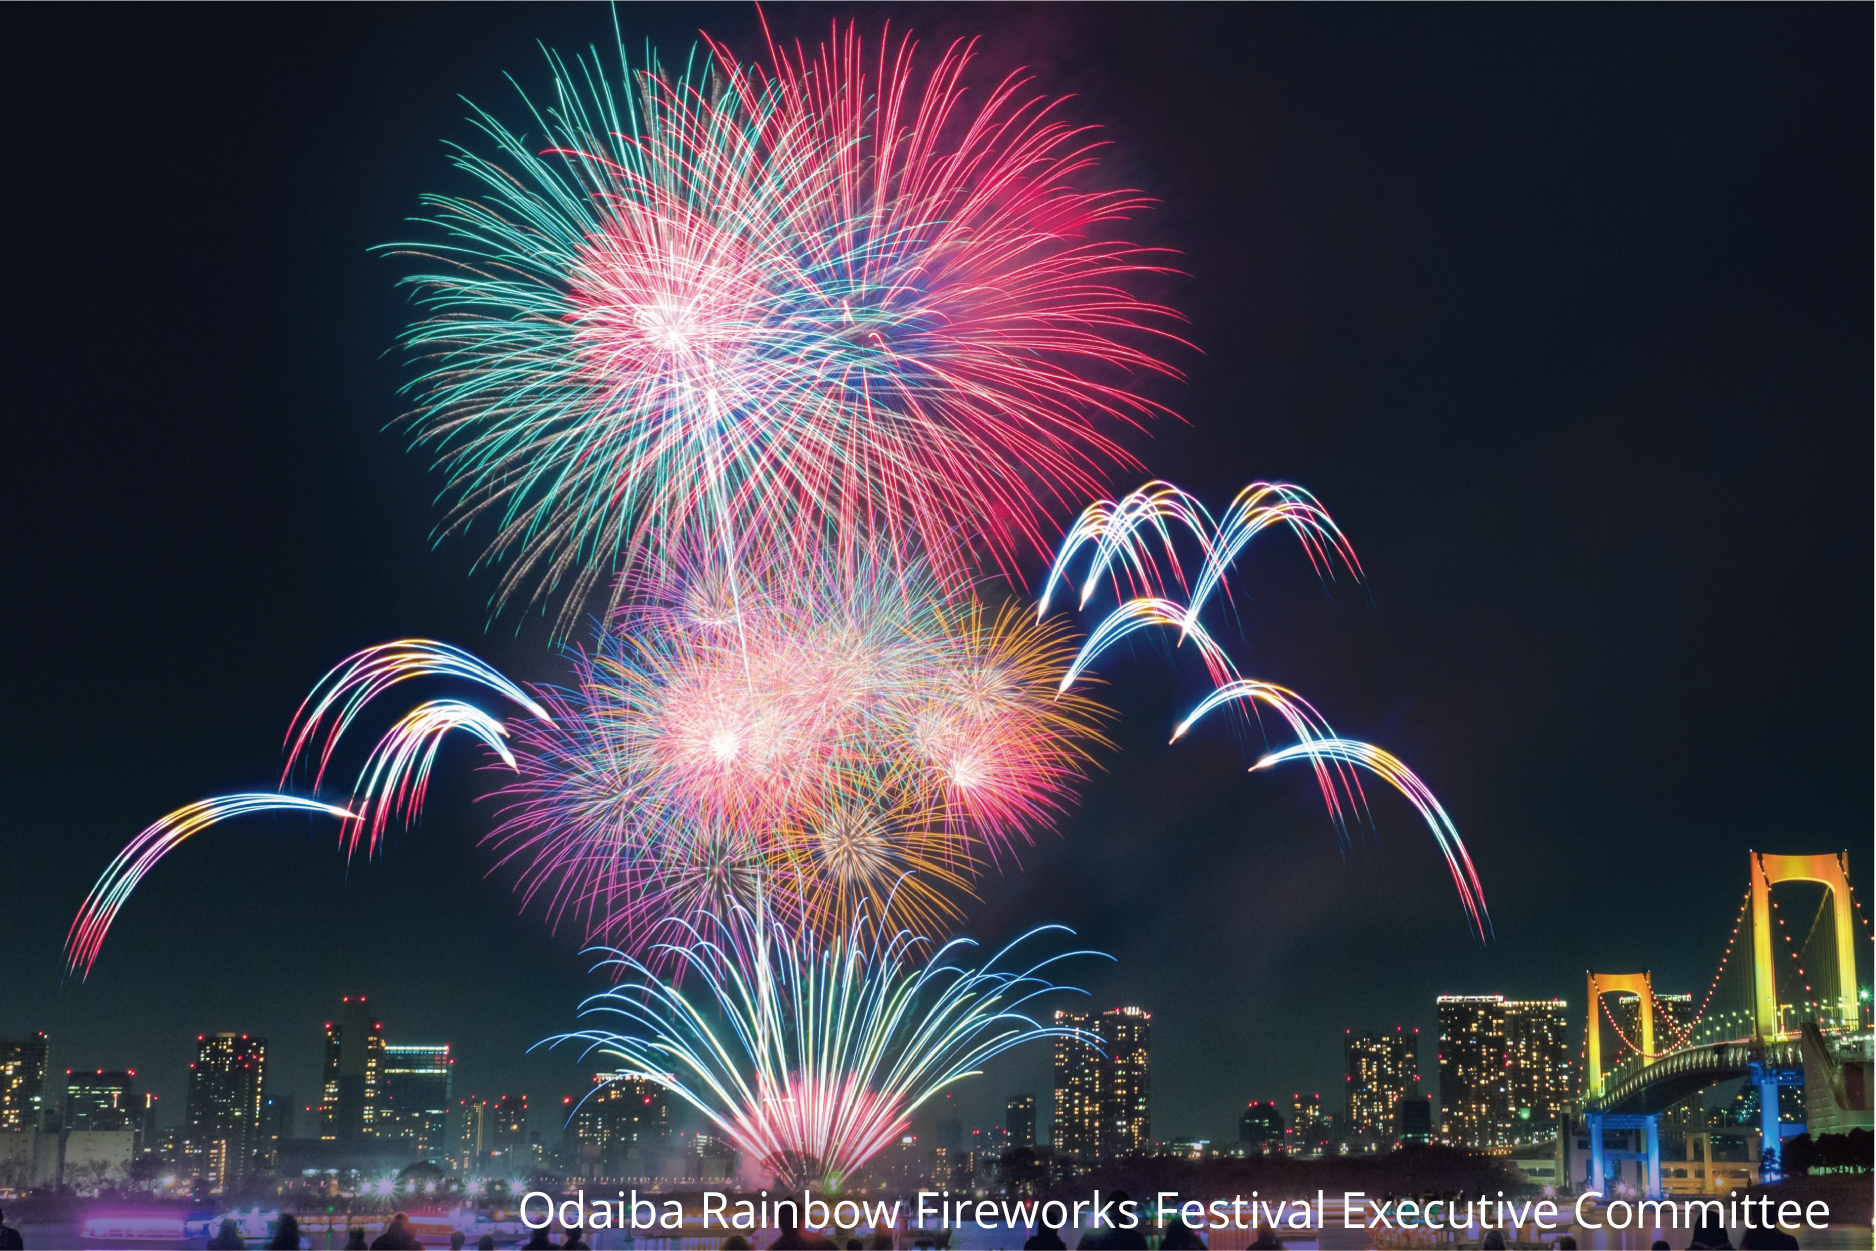 Odaiba Rainbow Fireworks Festival 2019